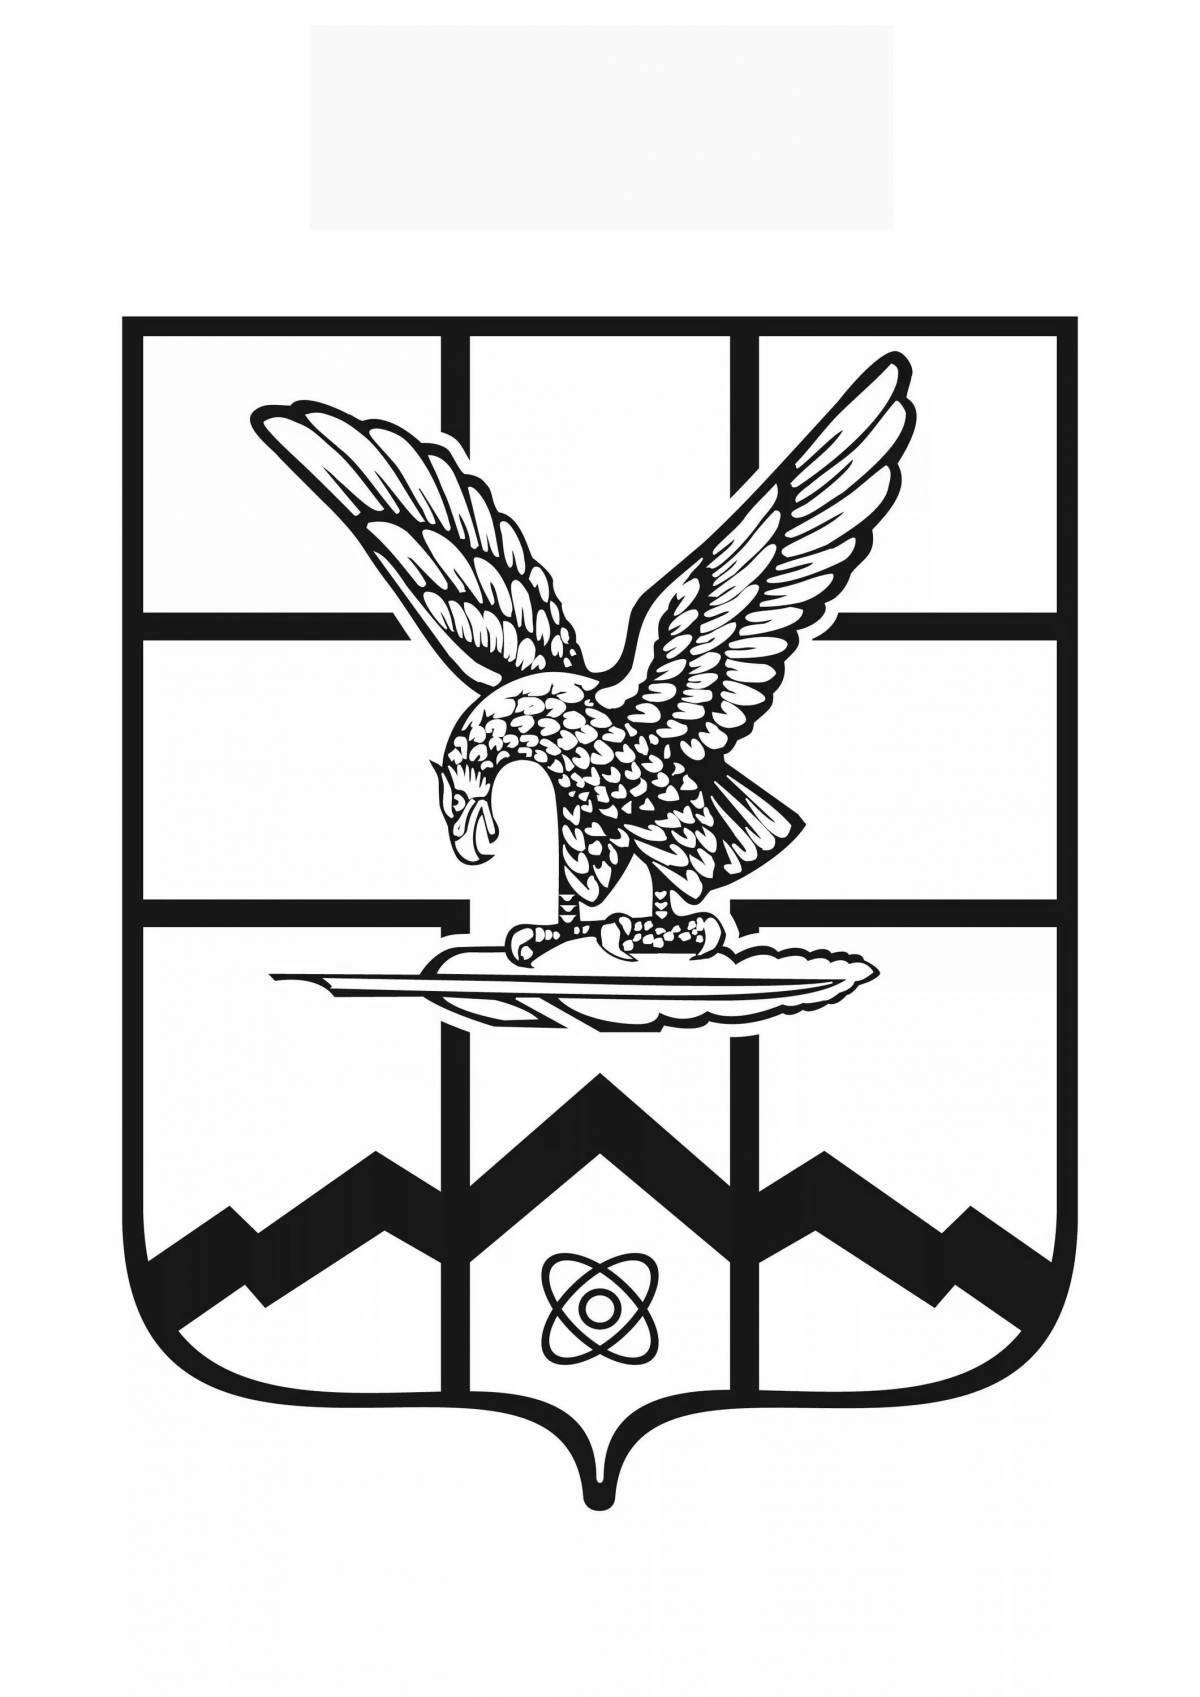 Герб города пятигорска фото с описанием